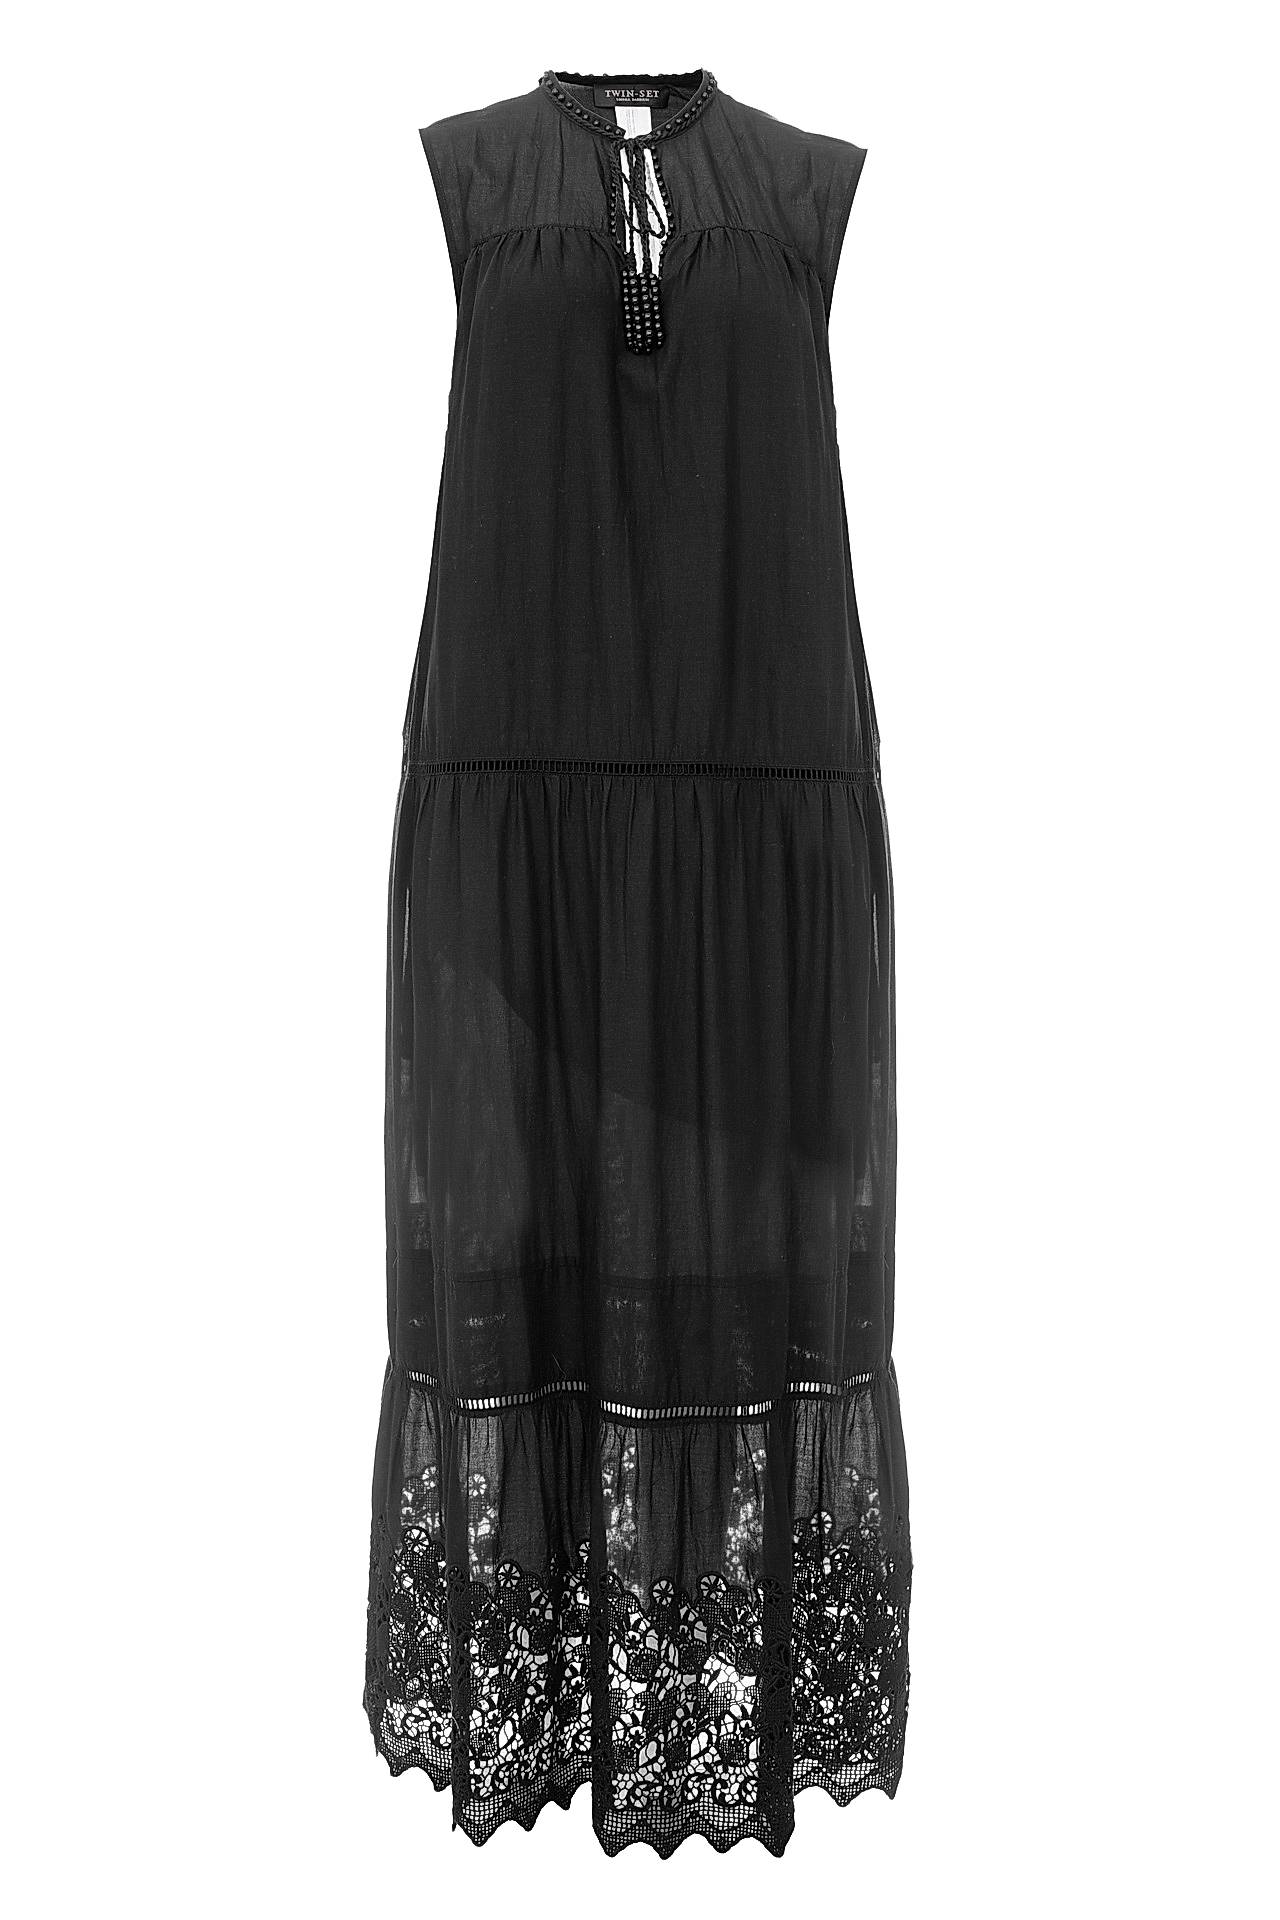 Одежда женская Платье TWIN-SET (TS62CB/16.2). Купить за 10500 руб.